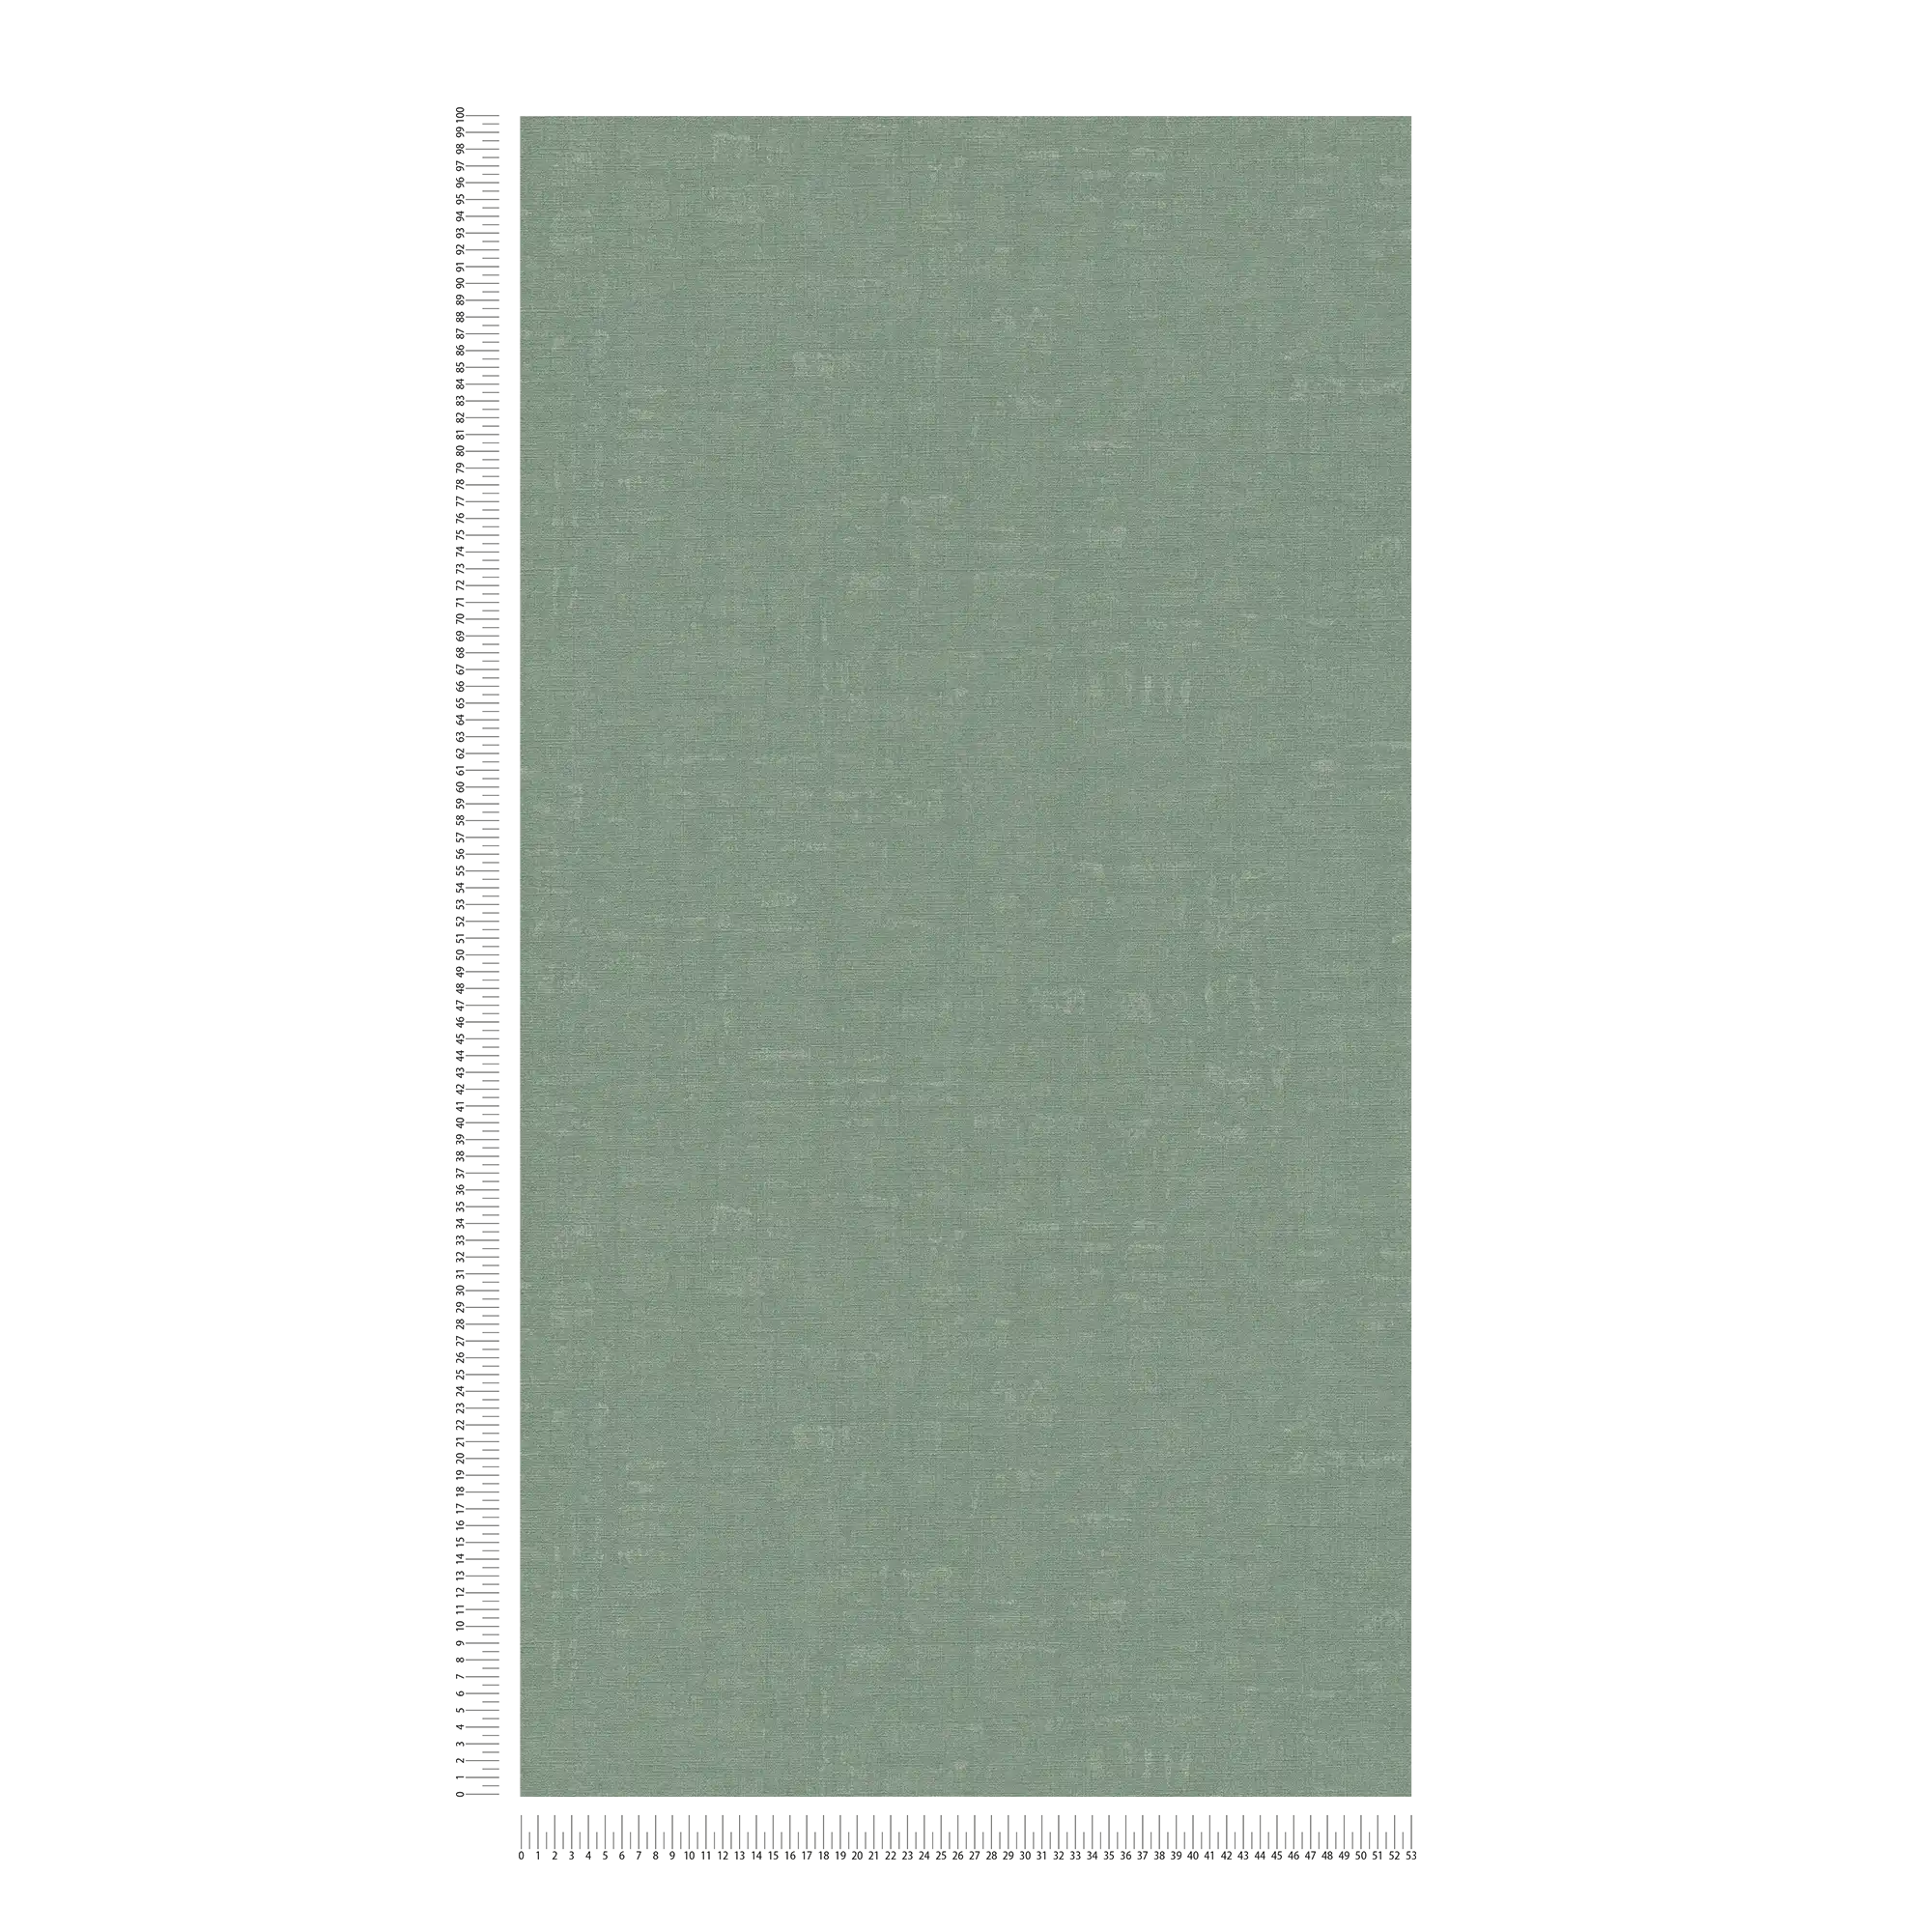             Groen behang effen en gevlekt met structuur reliëf
        